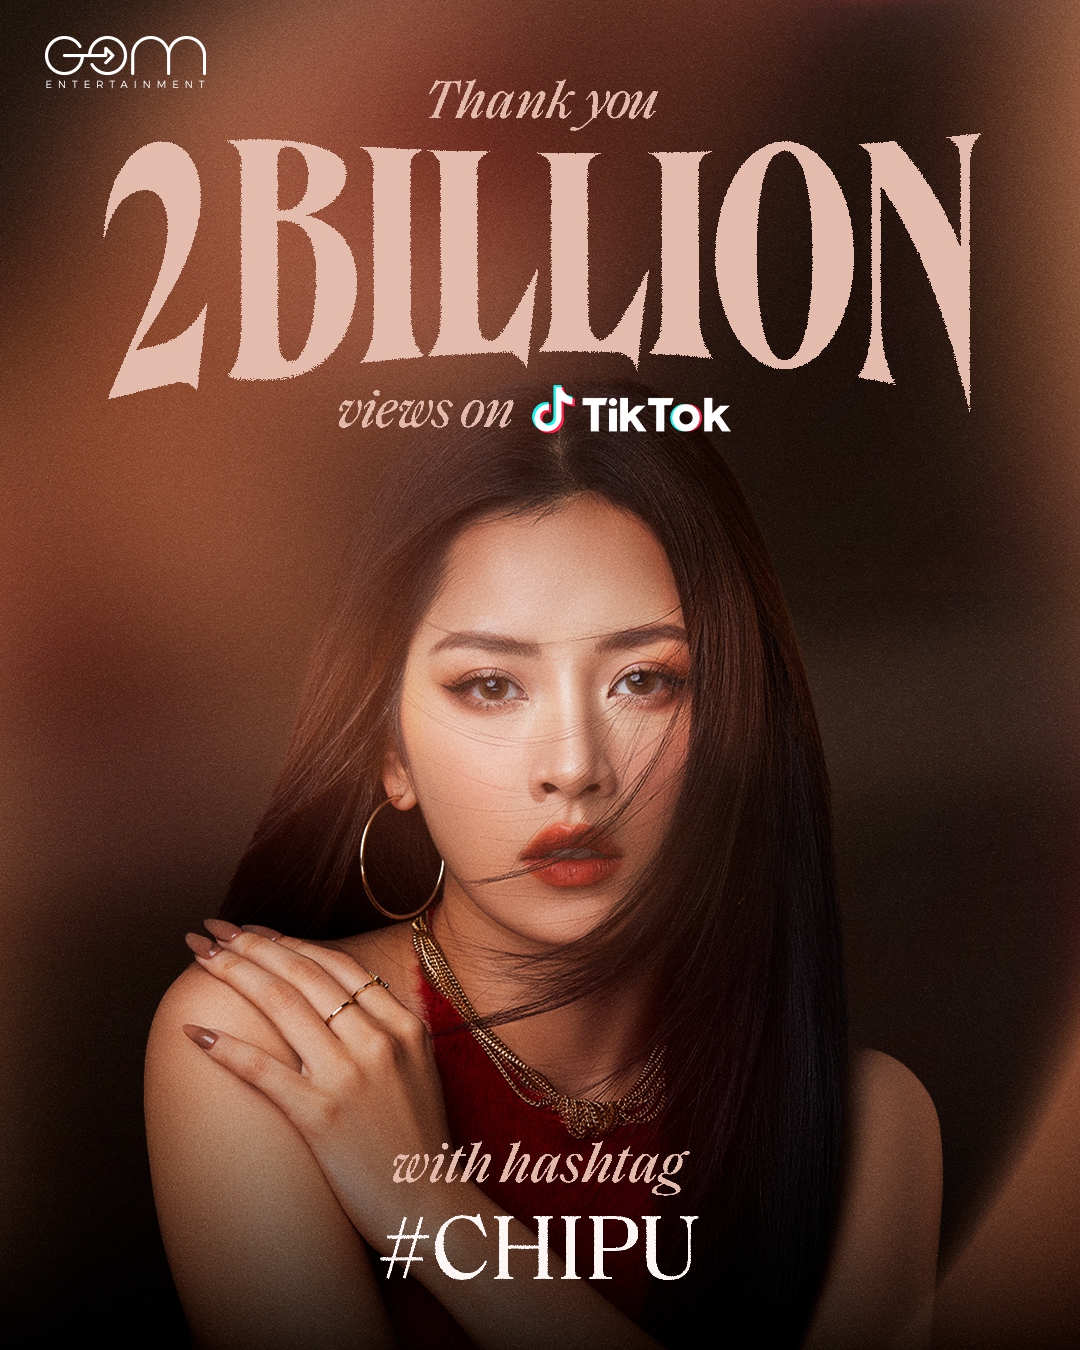 Điều gì giúp Chi Pu vượt mốc 2 tỉ lượt xem trên TikTok? - Ảnh 1.